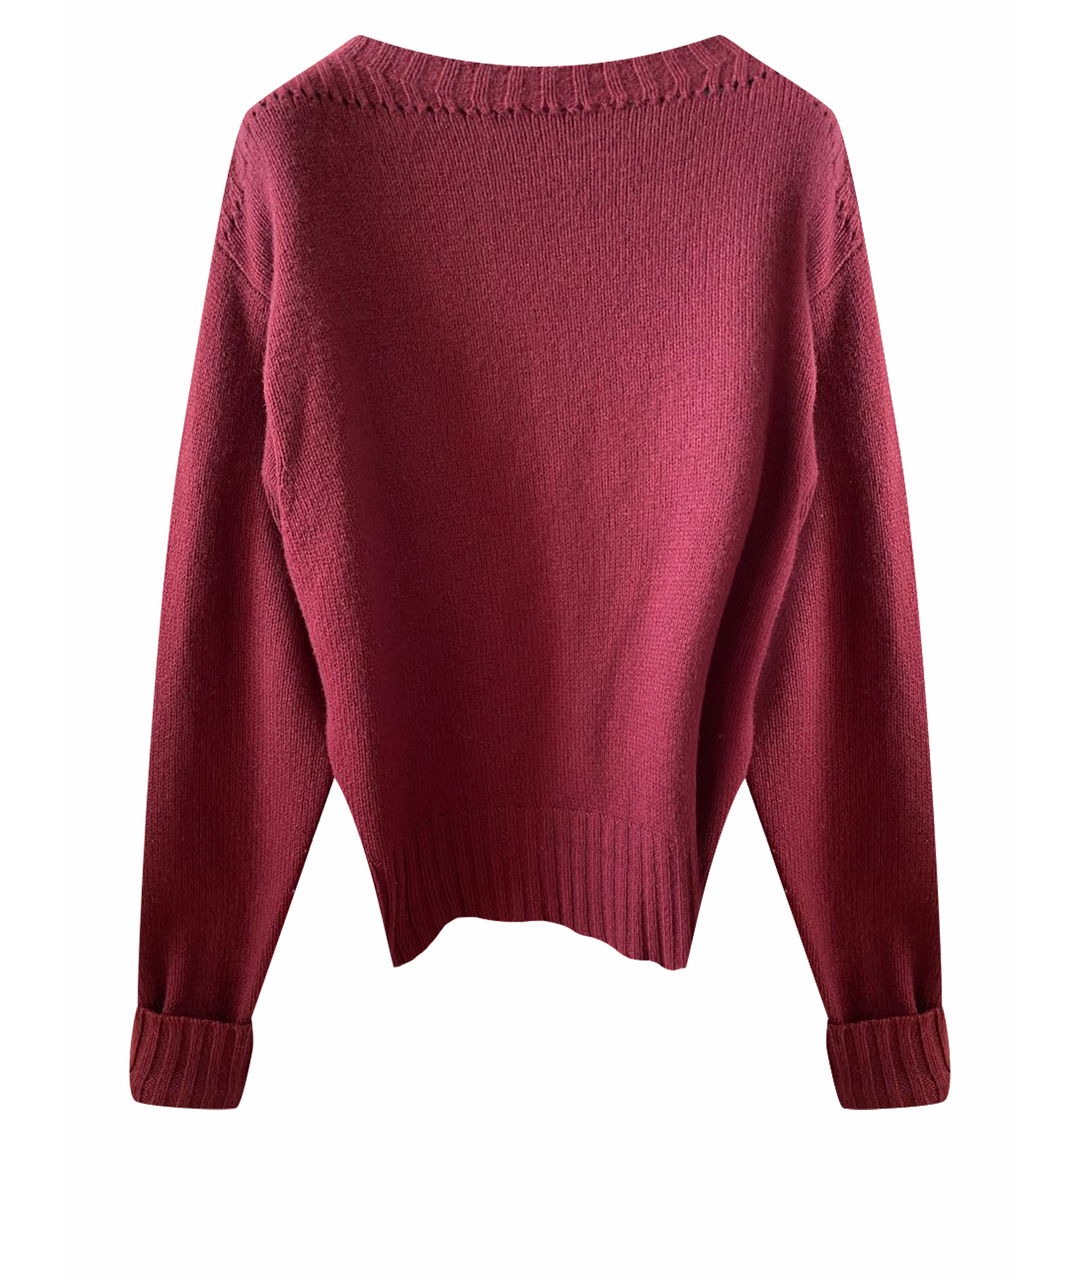 ISABEL MARANT Бордовый шерстяной джемпер / свитер, фото 1